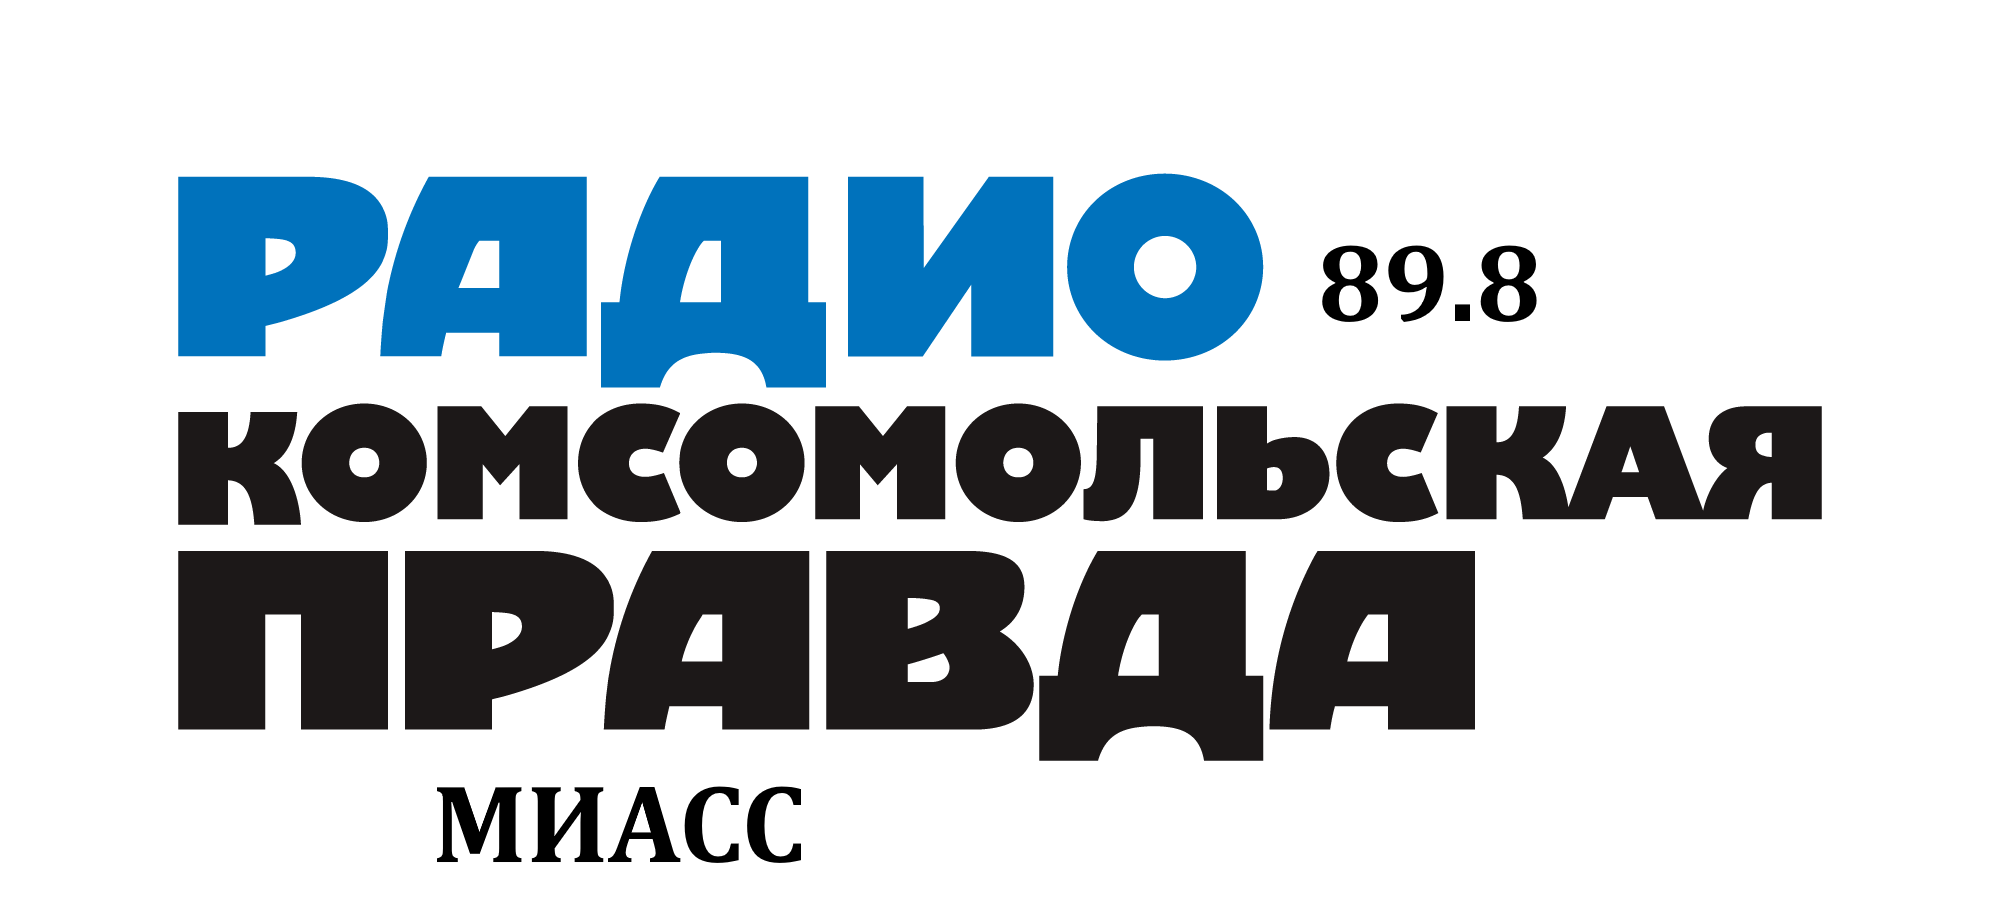 Раземщение рекламы  Комсомольская правда 89.8 FM, г. Миасс